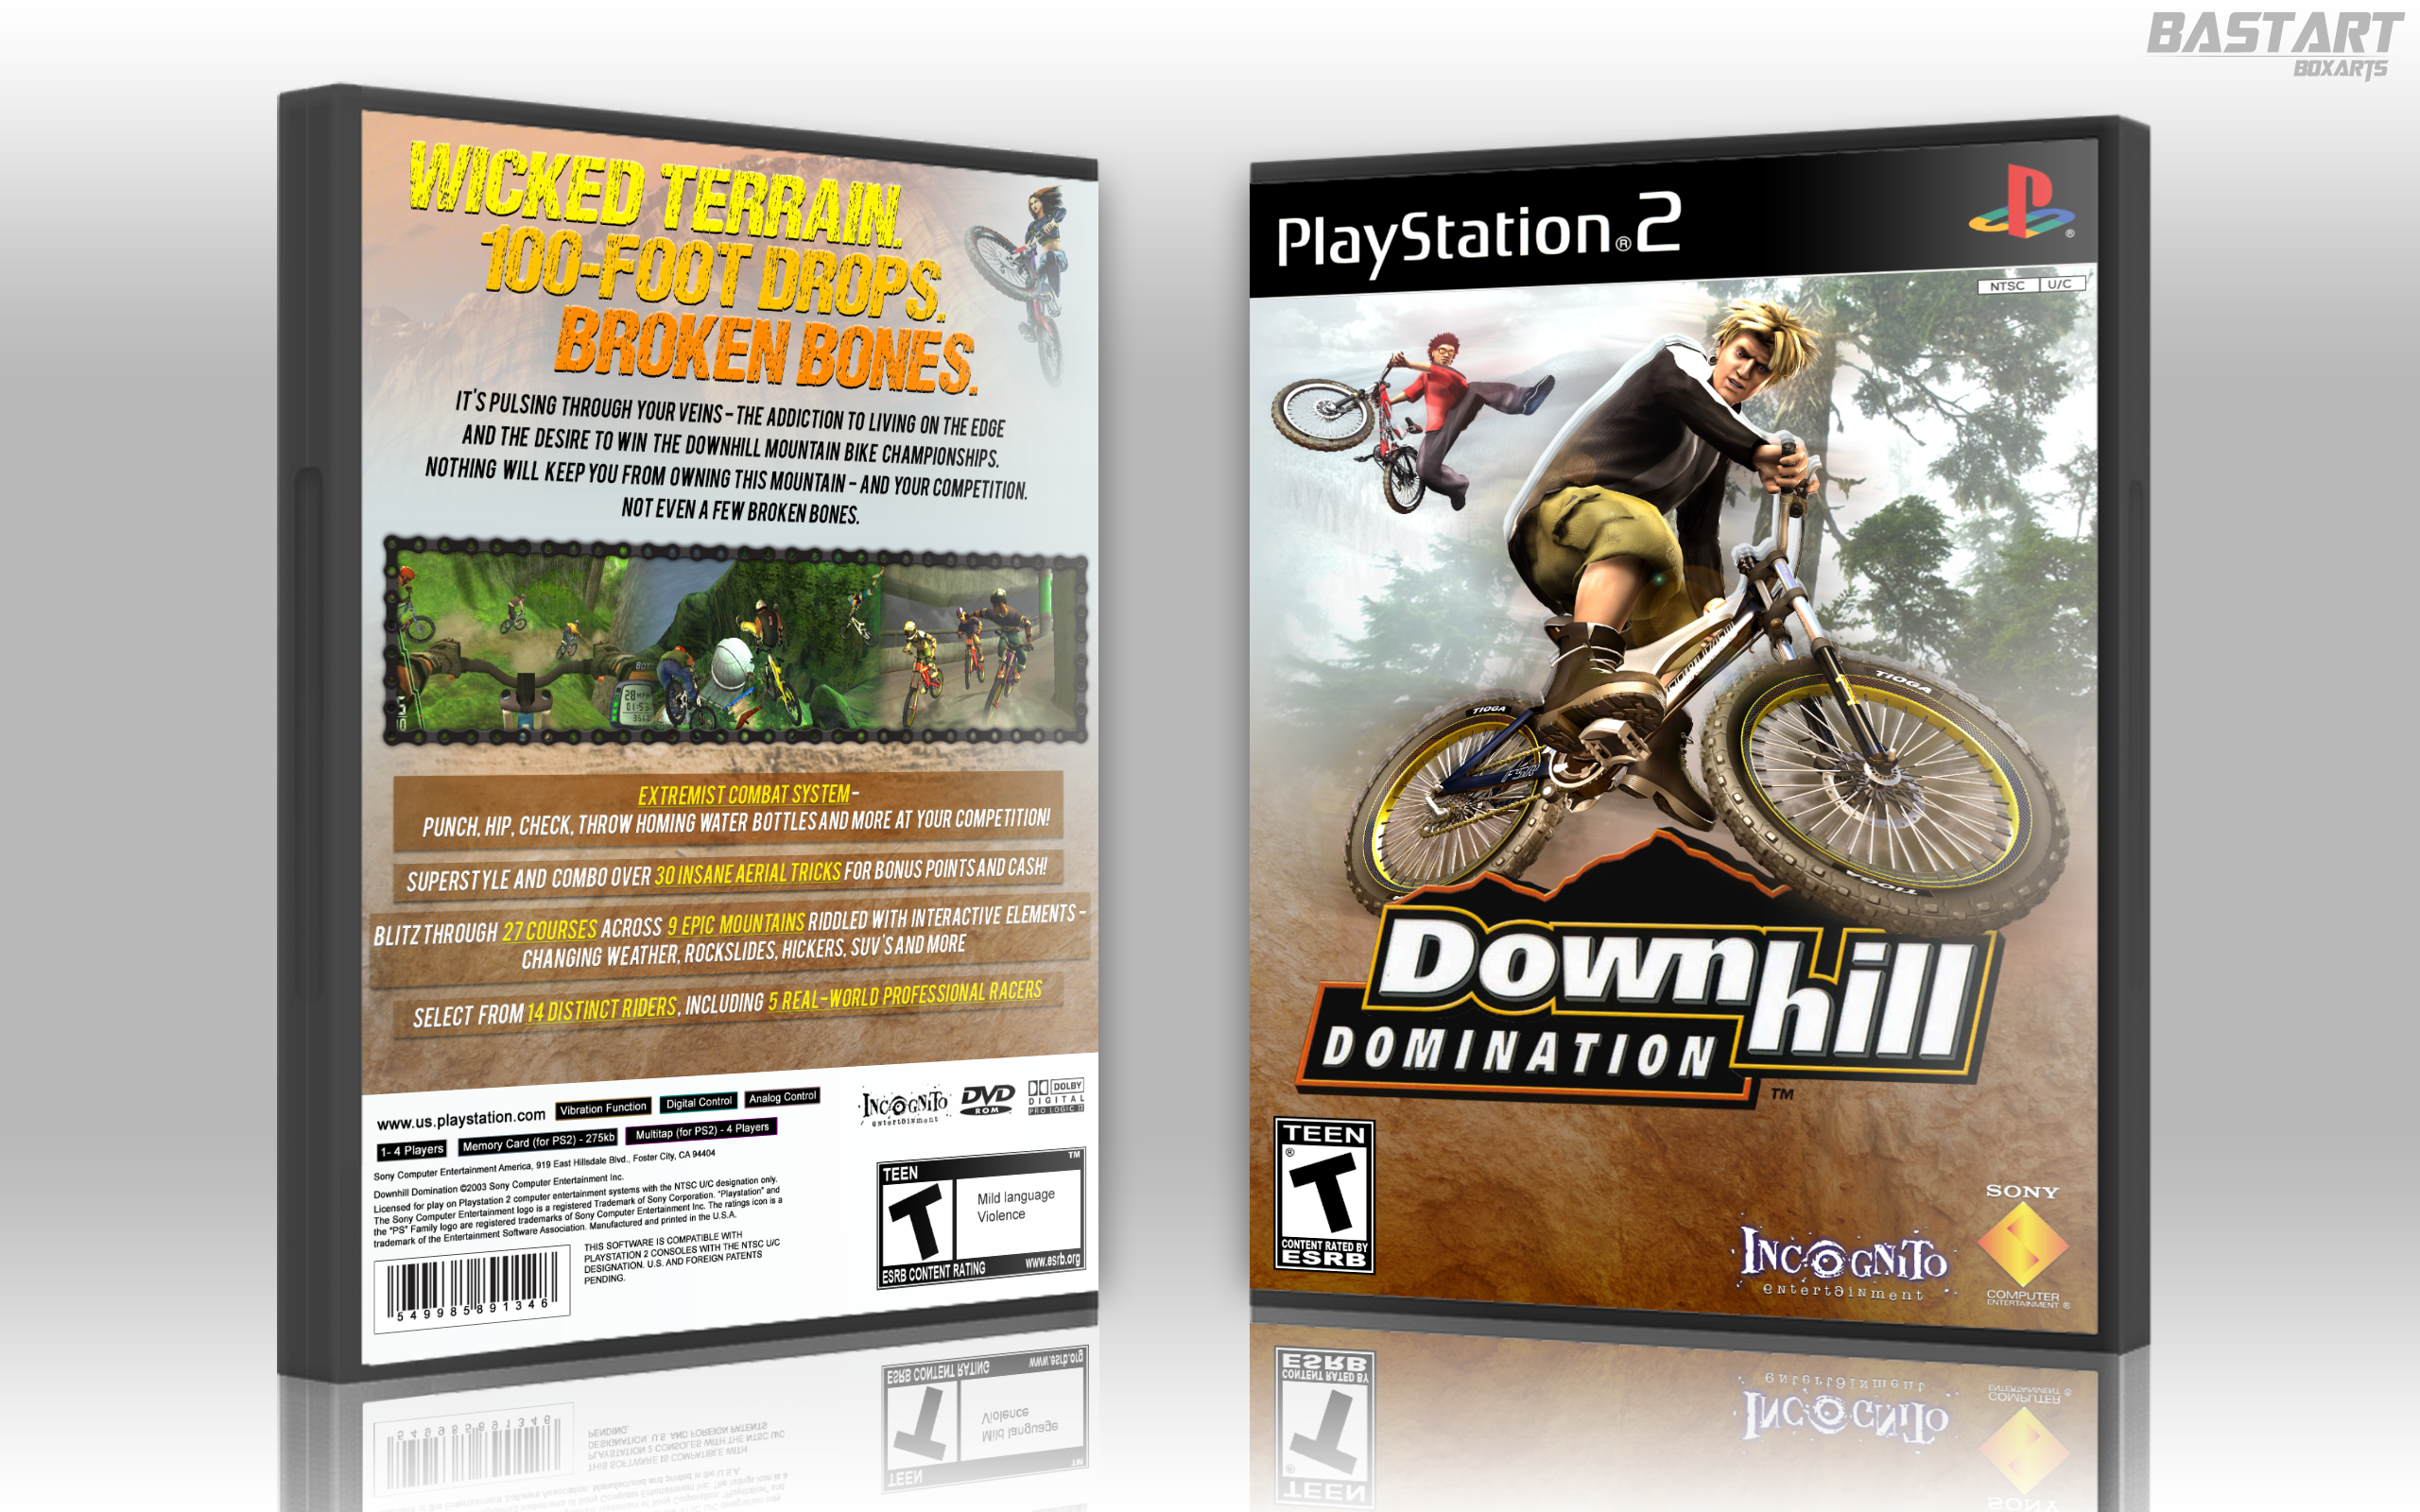 Tony Hawk's Downhill Jam Xbox 360 Box Art Cover by ShadowDialga